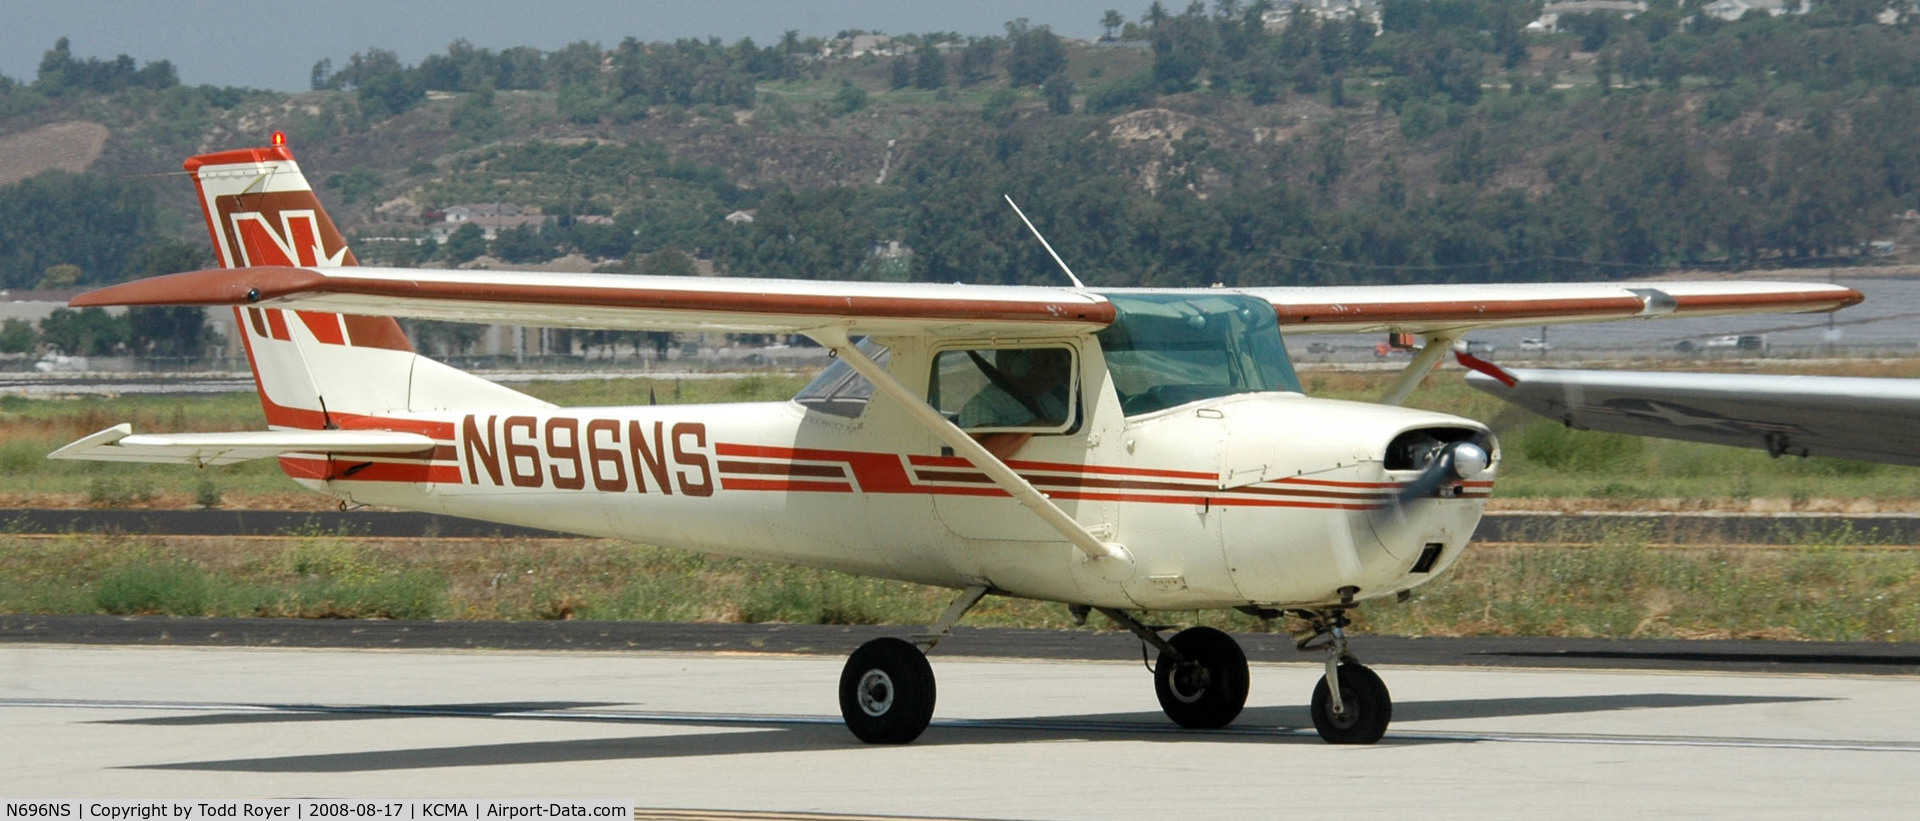 N696NS, 1968 Cessna 150H C/N 15068871, Camarillo Airshow 2008